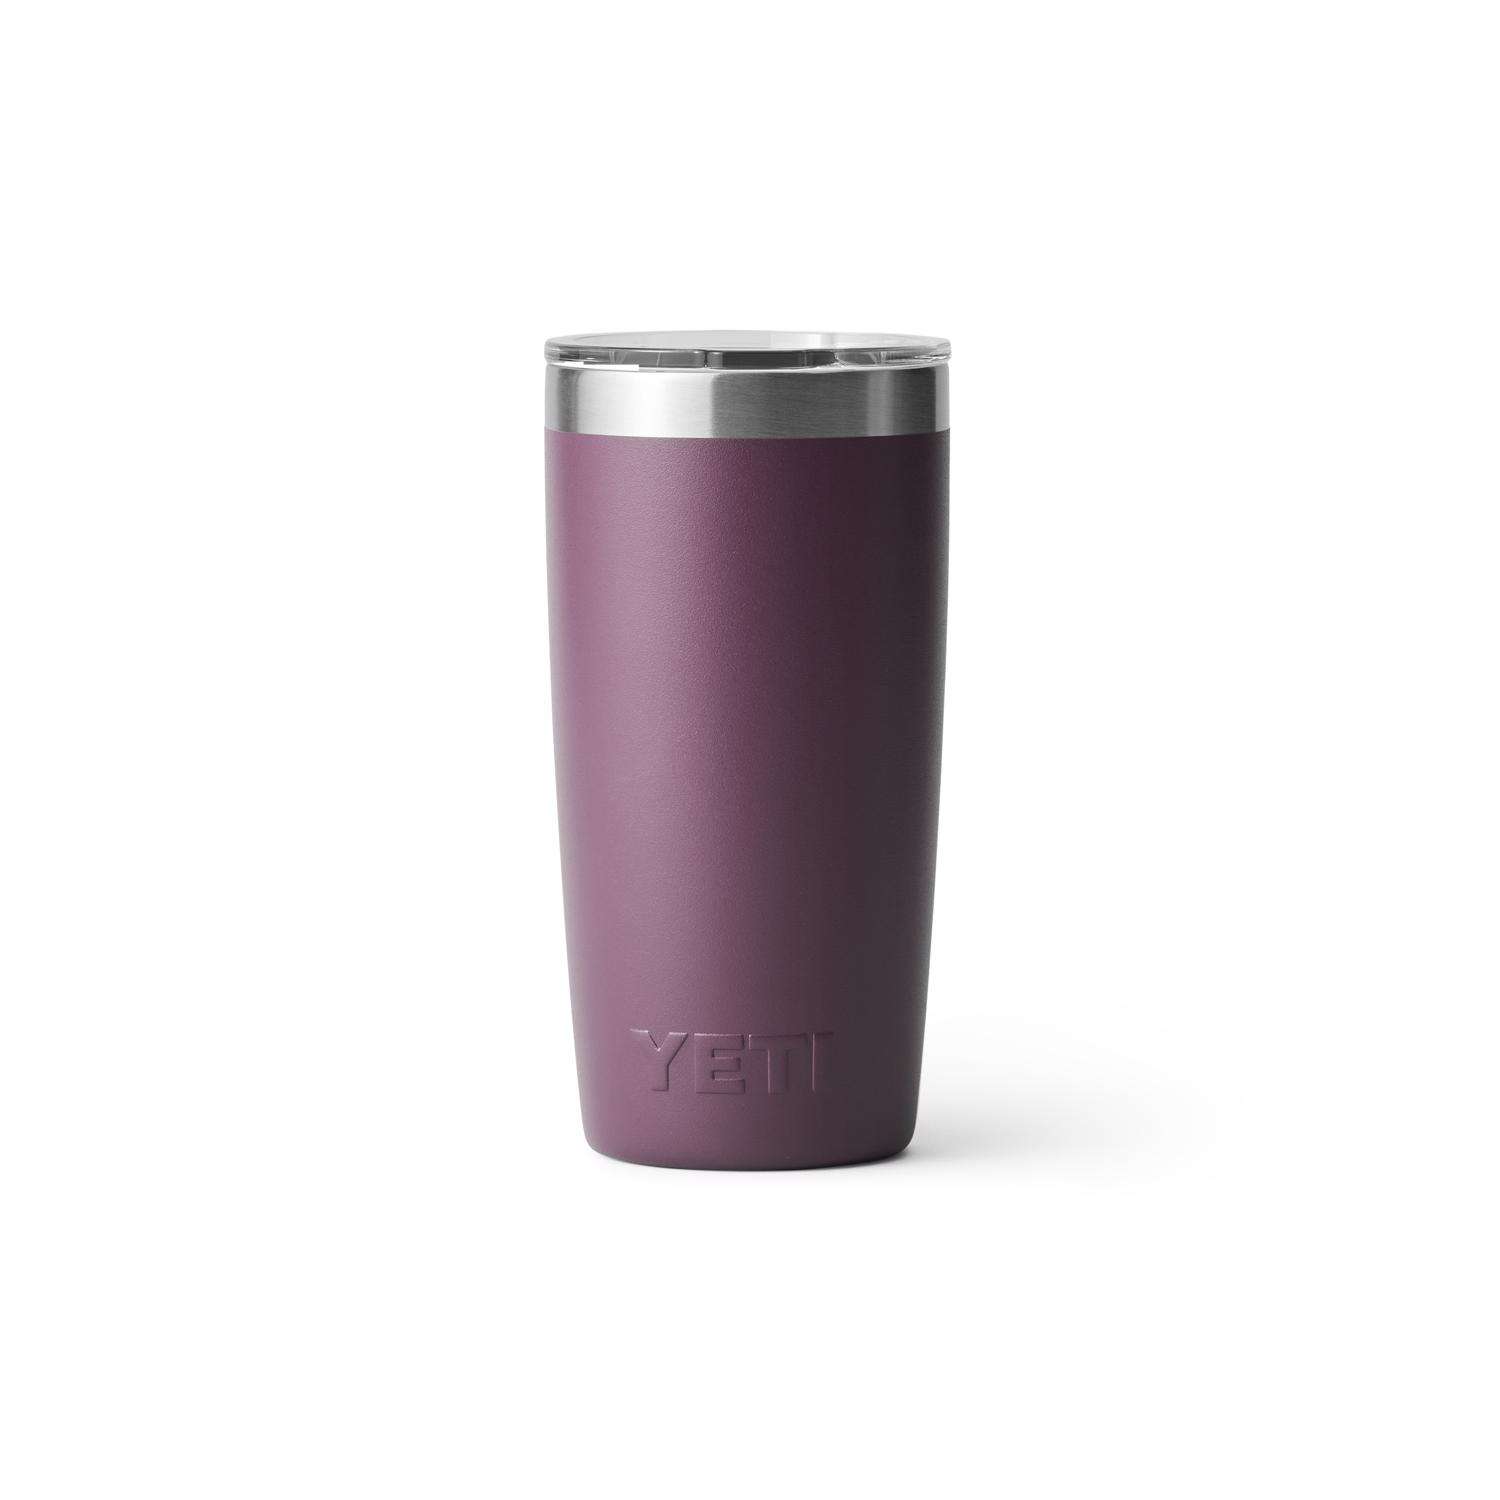 YETI Rambler 10 oz Nordic Purple BPA Free Tumbler with MagSlider Lid